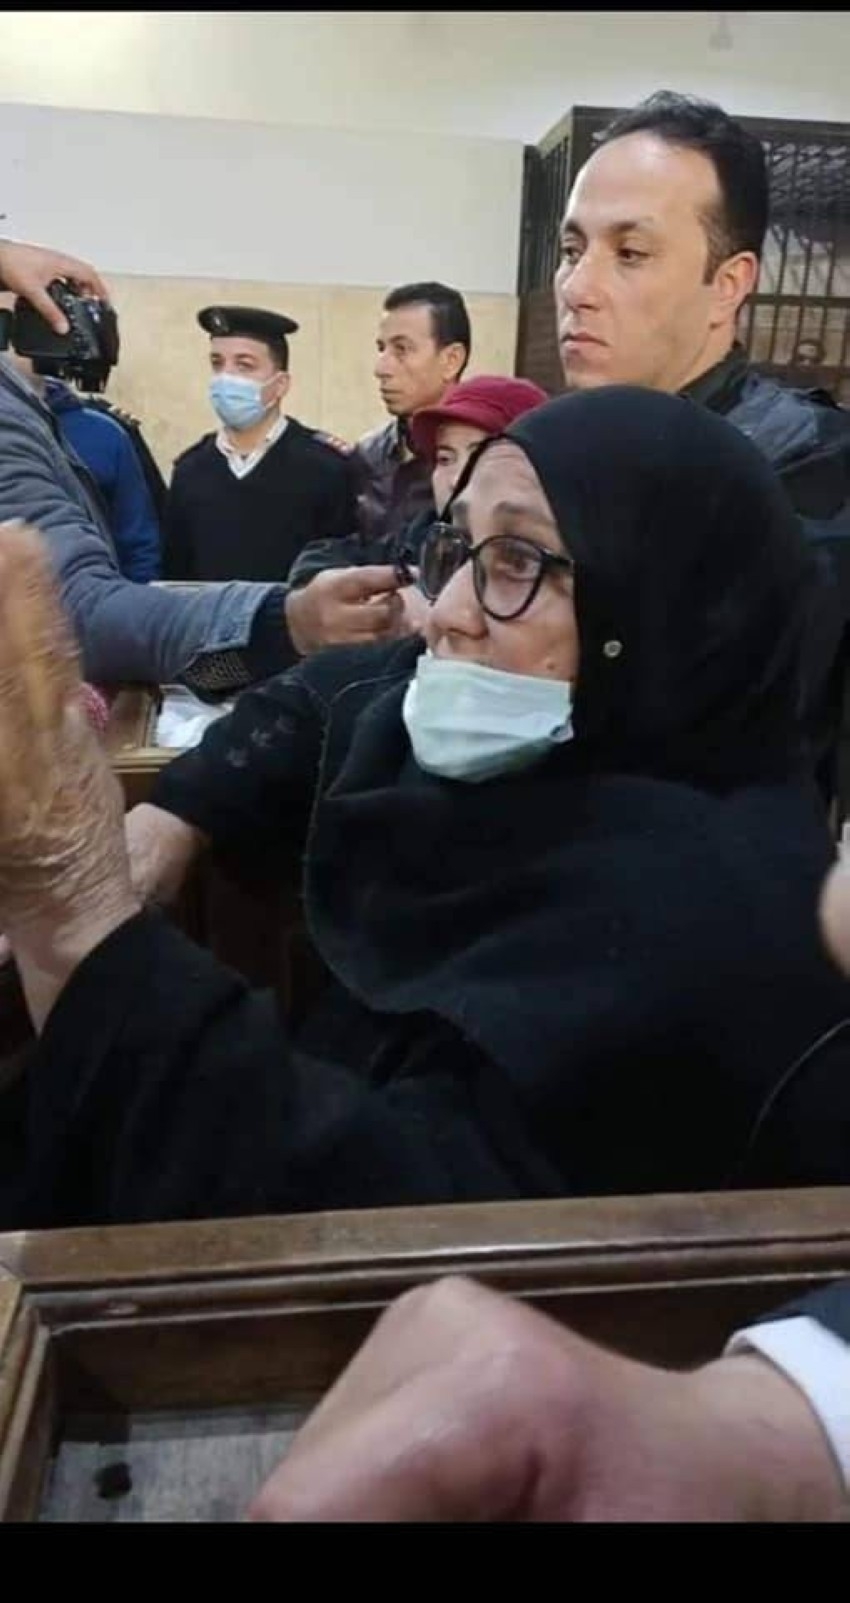 بين تعاطف واستنكار لموقفها.. أم مصرية تنقذ ابنها من الإعدام بعد قتل أخته حرقاً